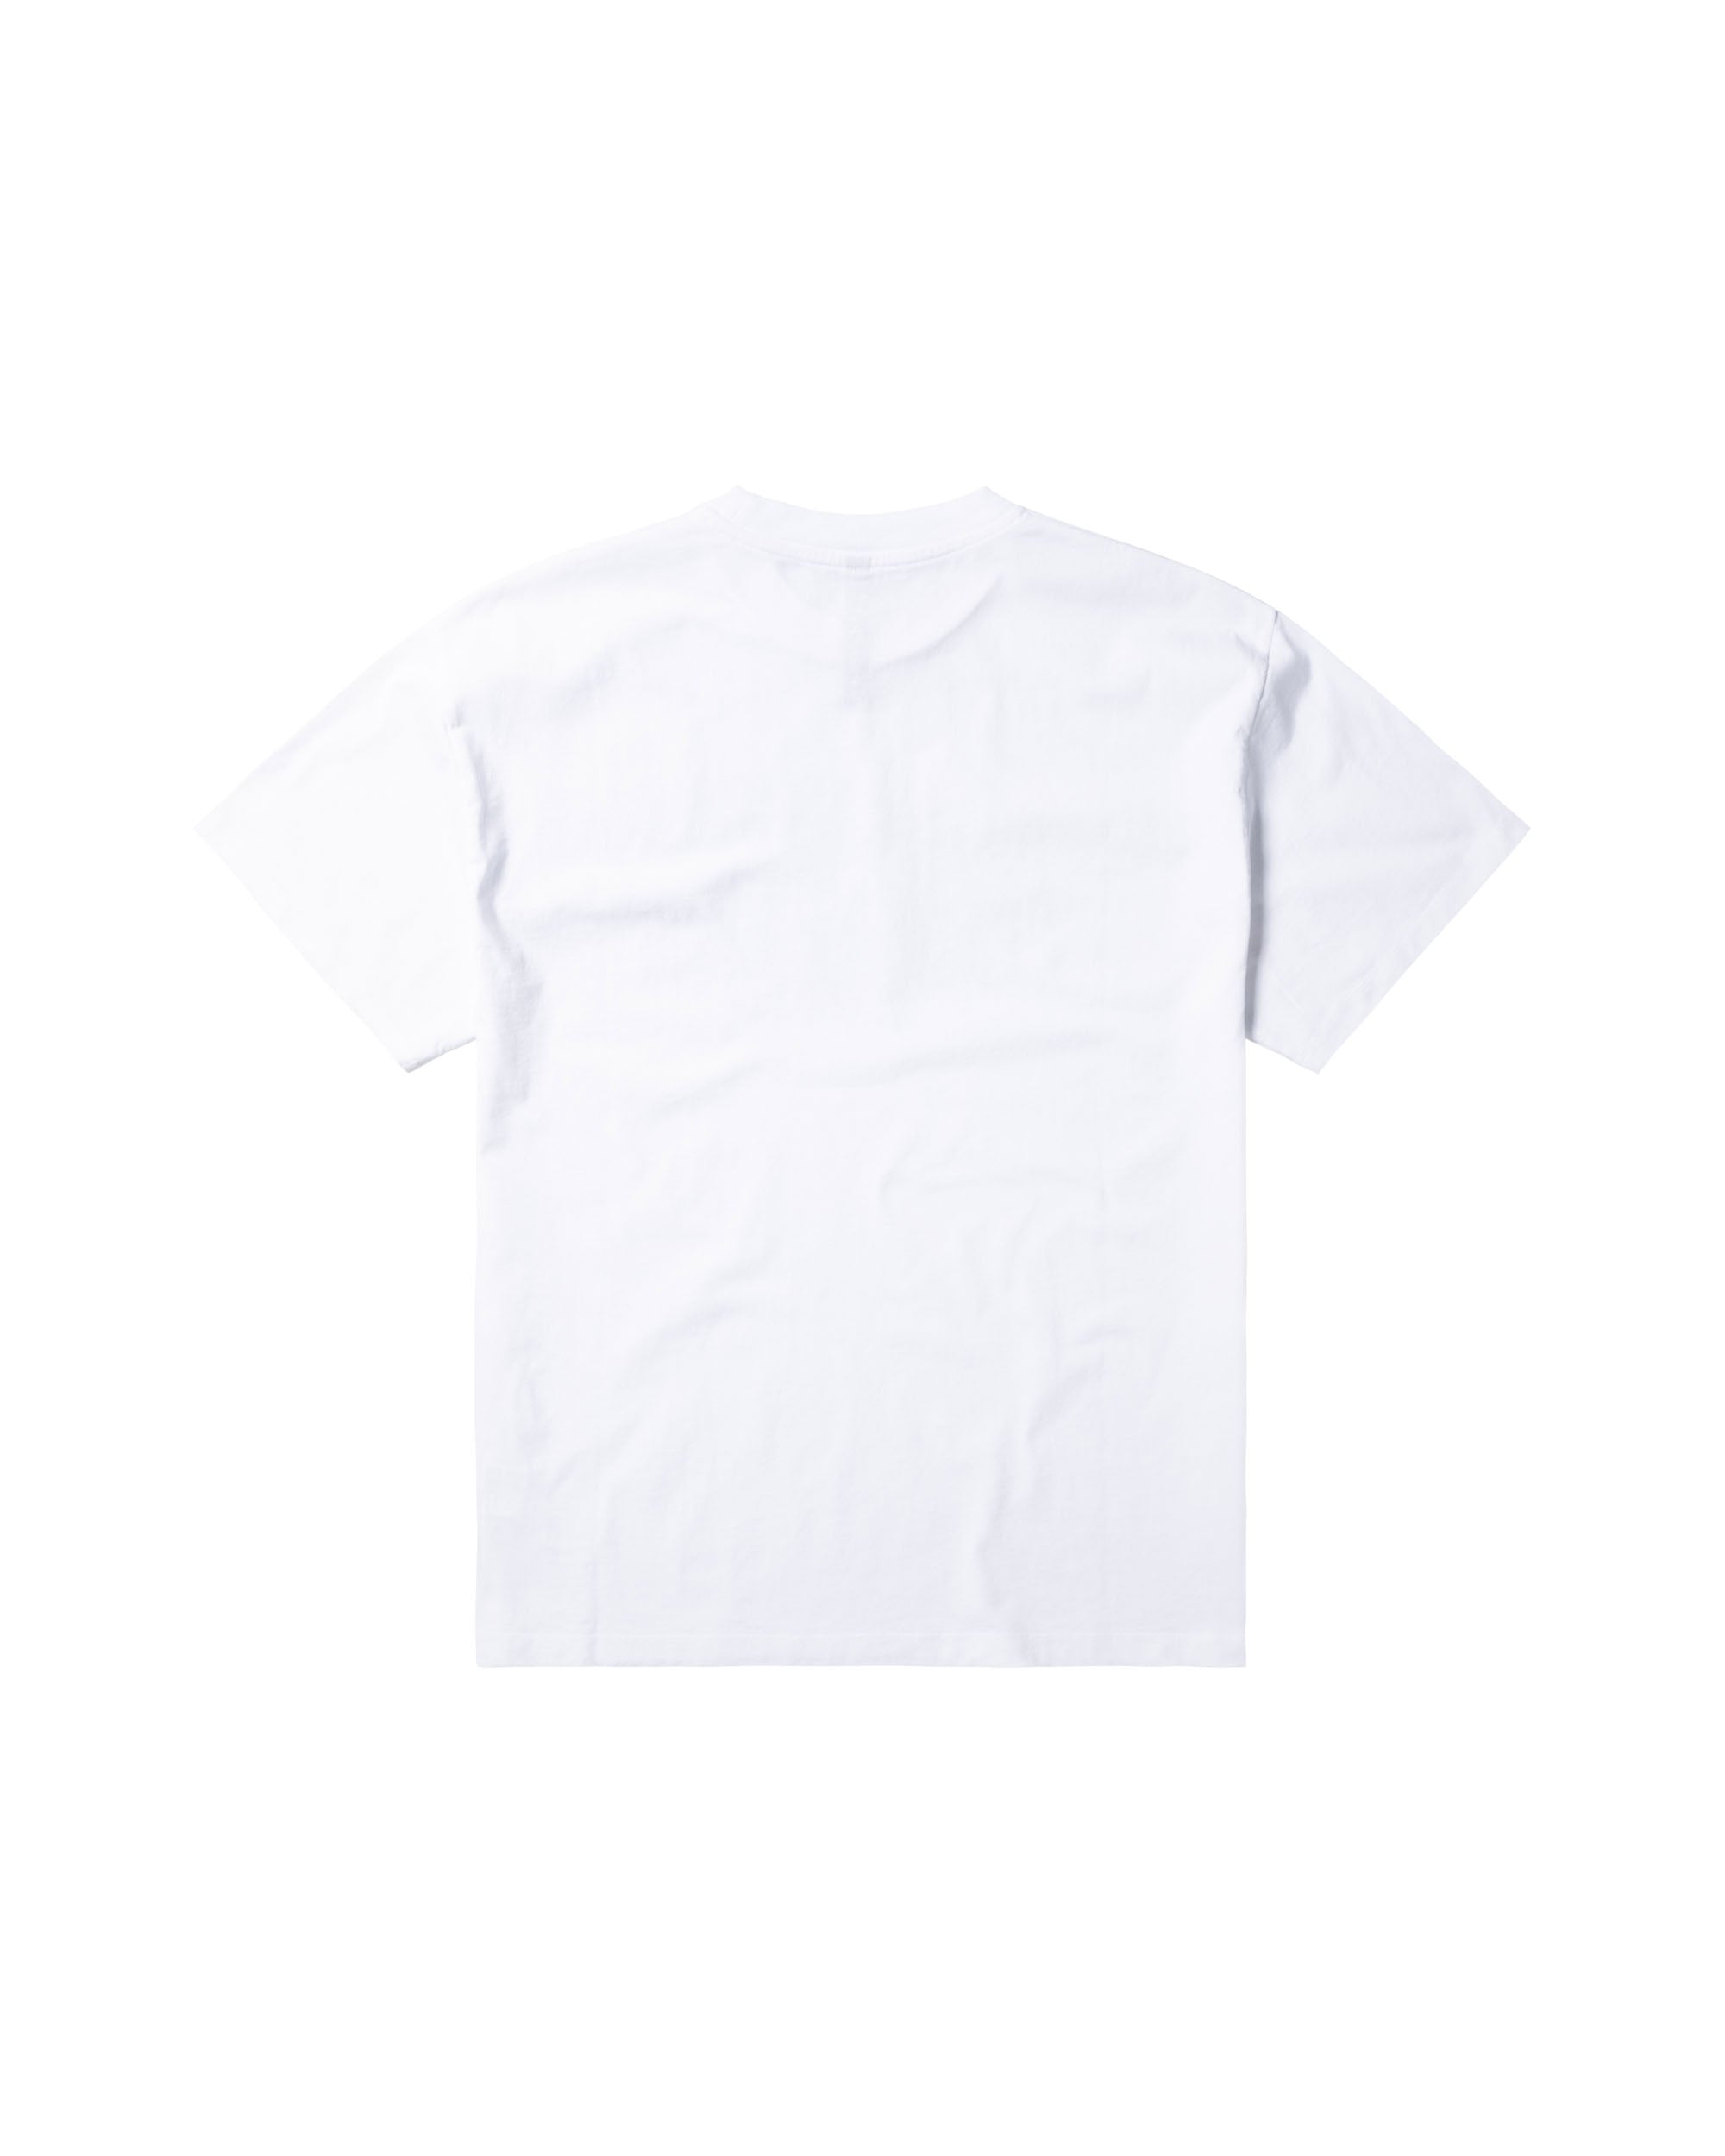 Mia Problemo T-shirt - White